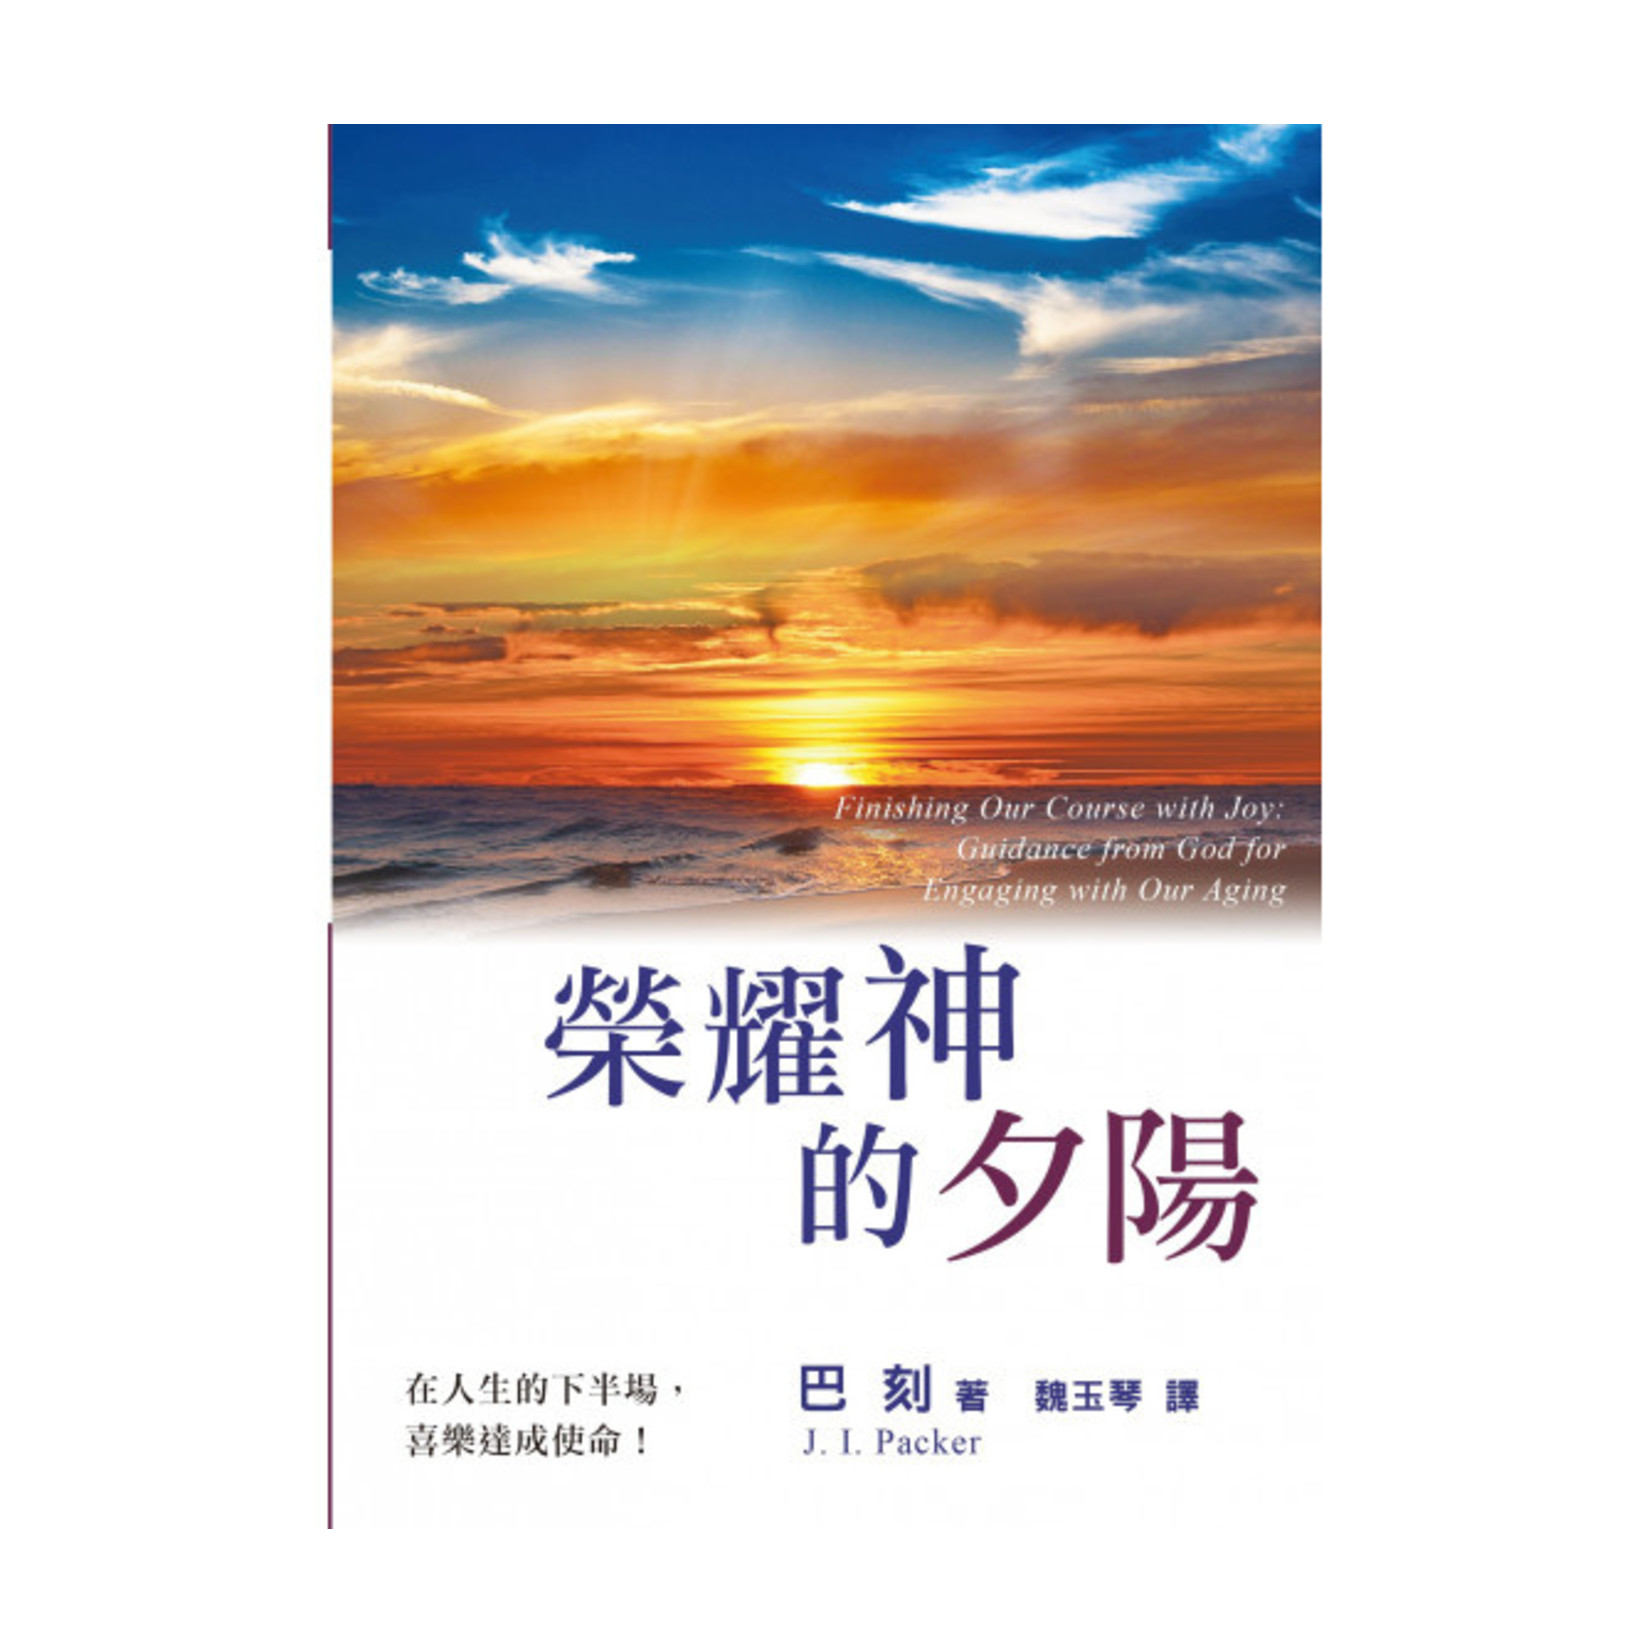 中國主日學協會 China Sunday School Association 榮耀神的夕陽 Finishing Our Course with Joy: Guidance from God for Engaging with Our Aging